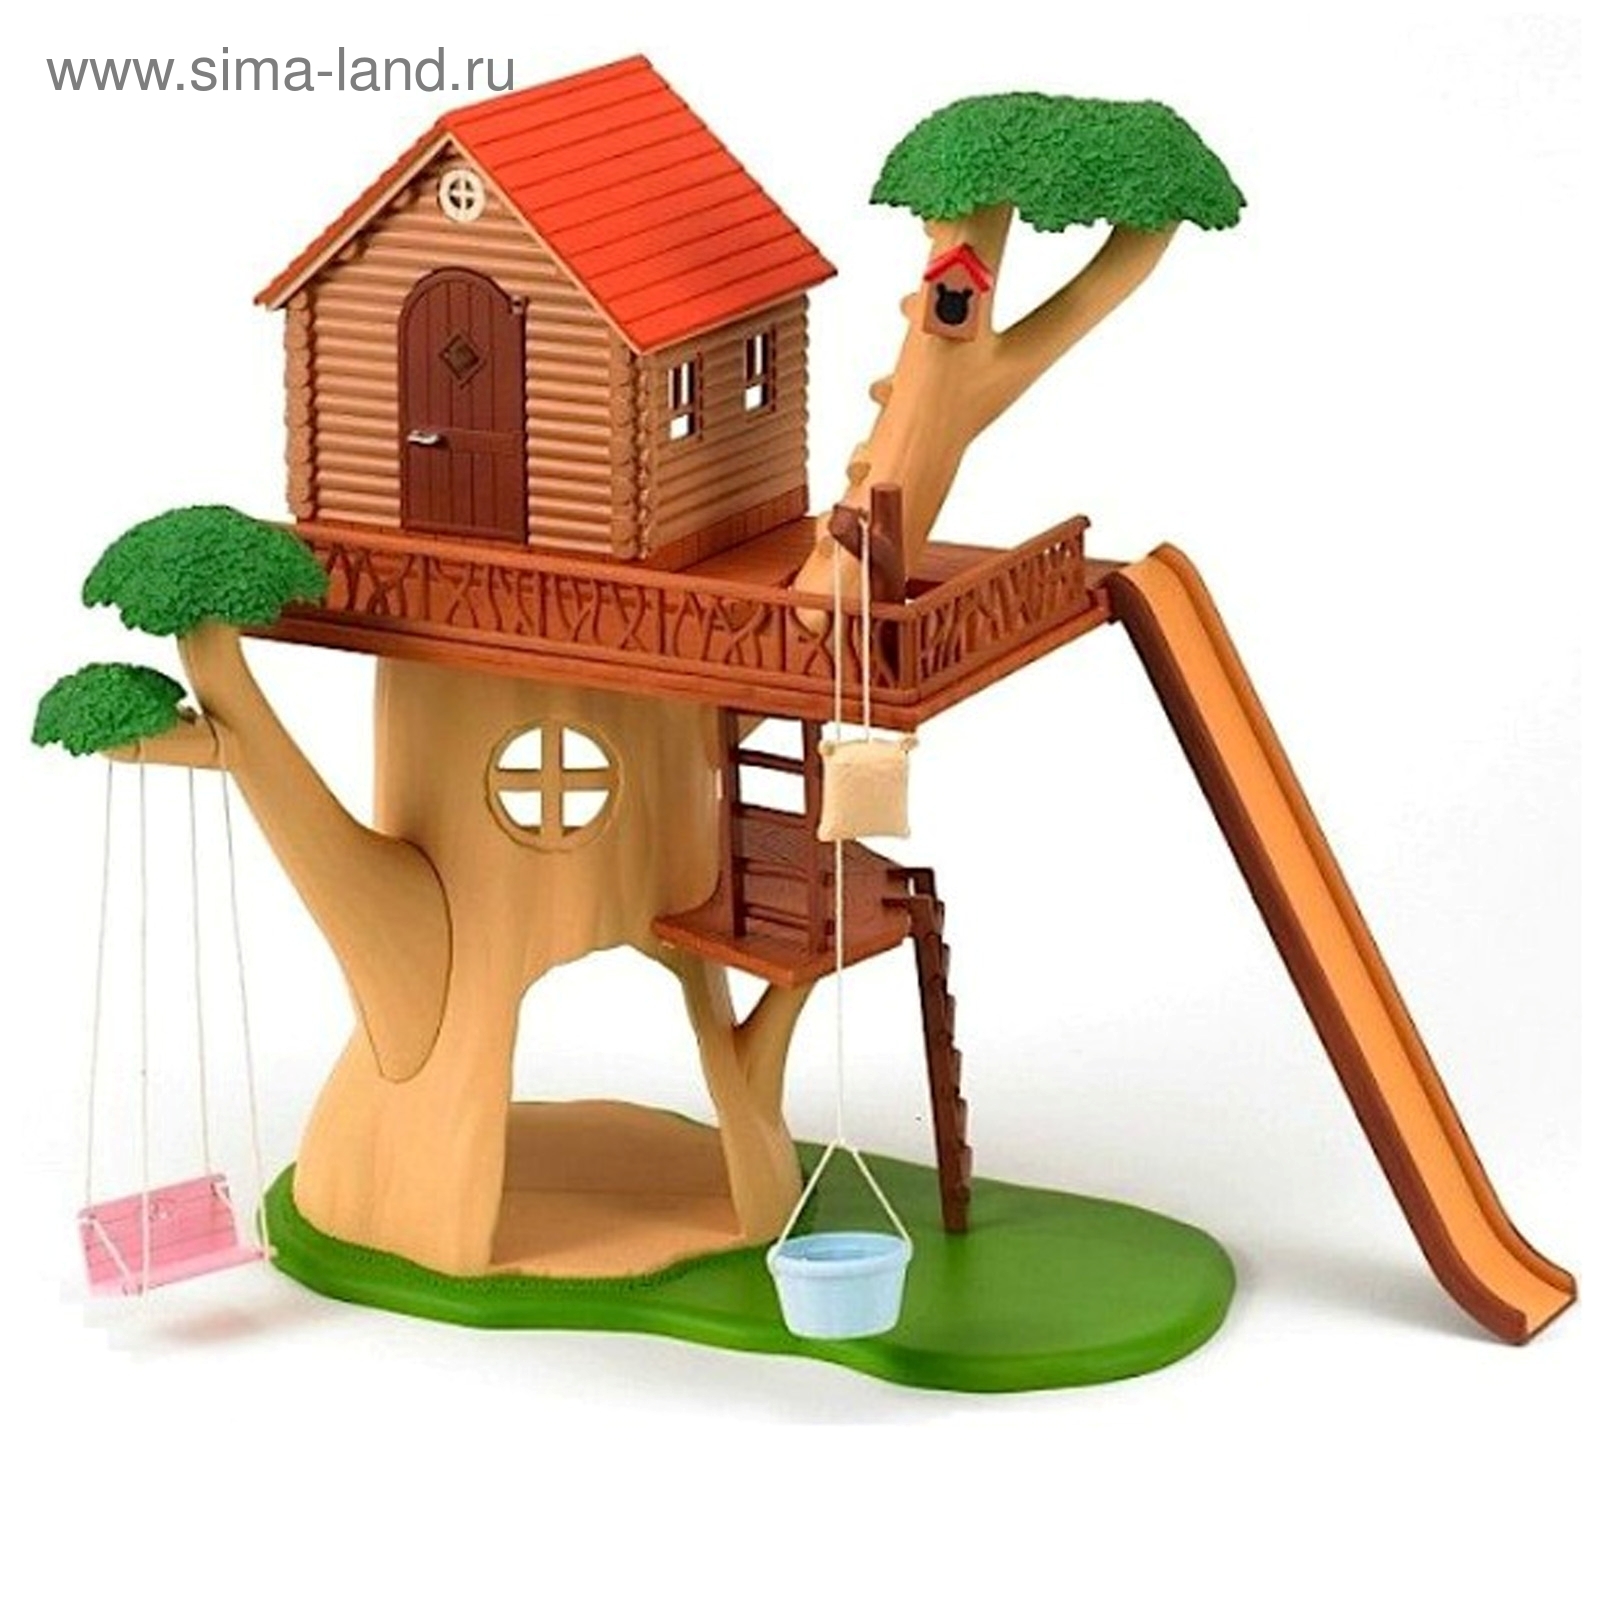 Набор «Дерево-дом» (1075875) - Купить по цене от 4 679.00 руб. | Интернет  магазин SIMA-LAND.RU